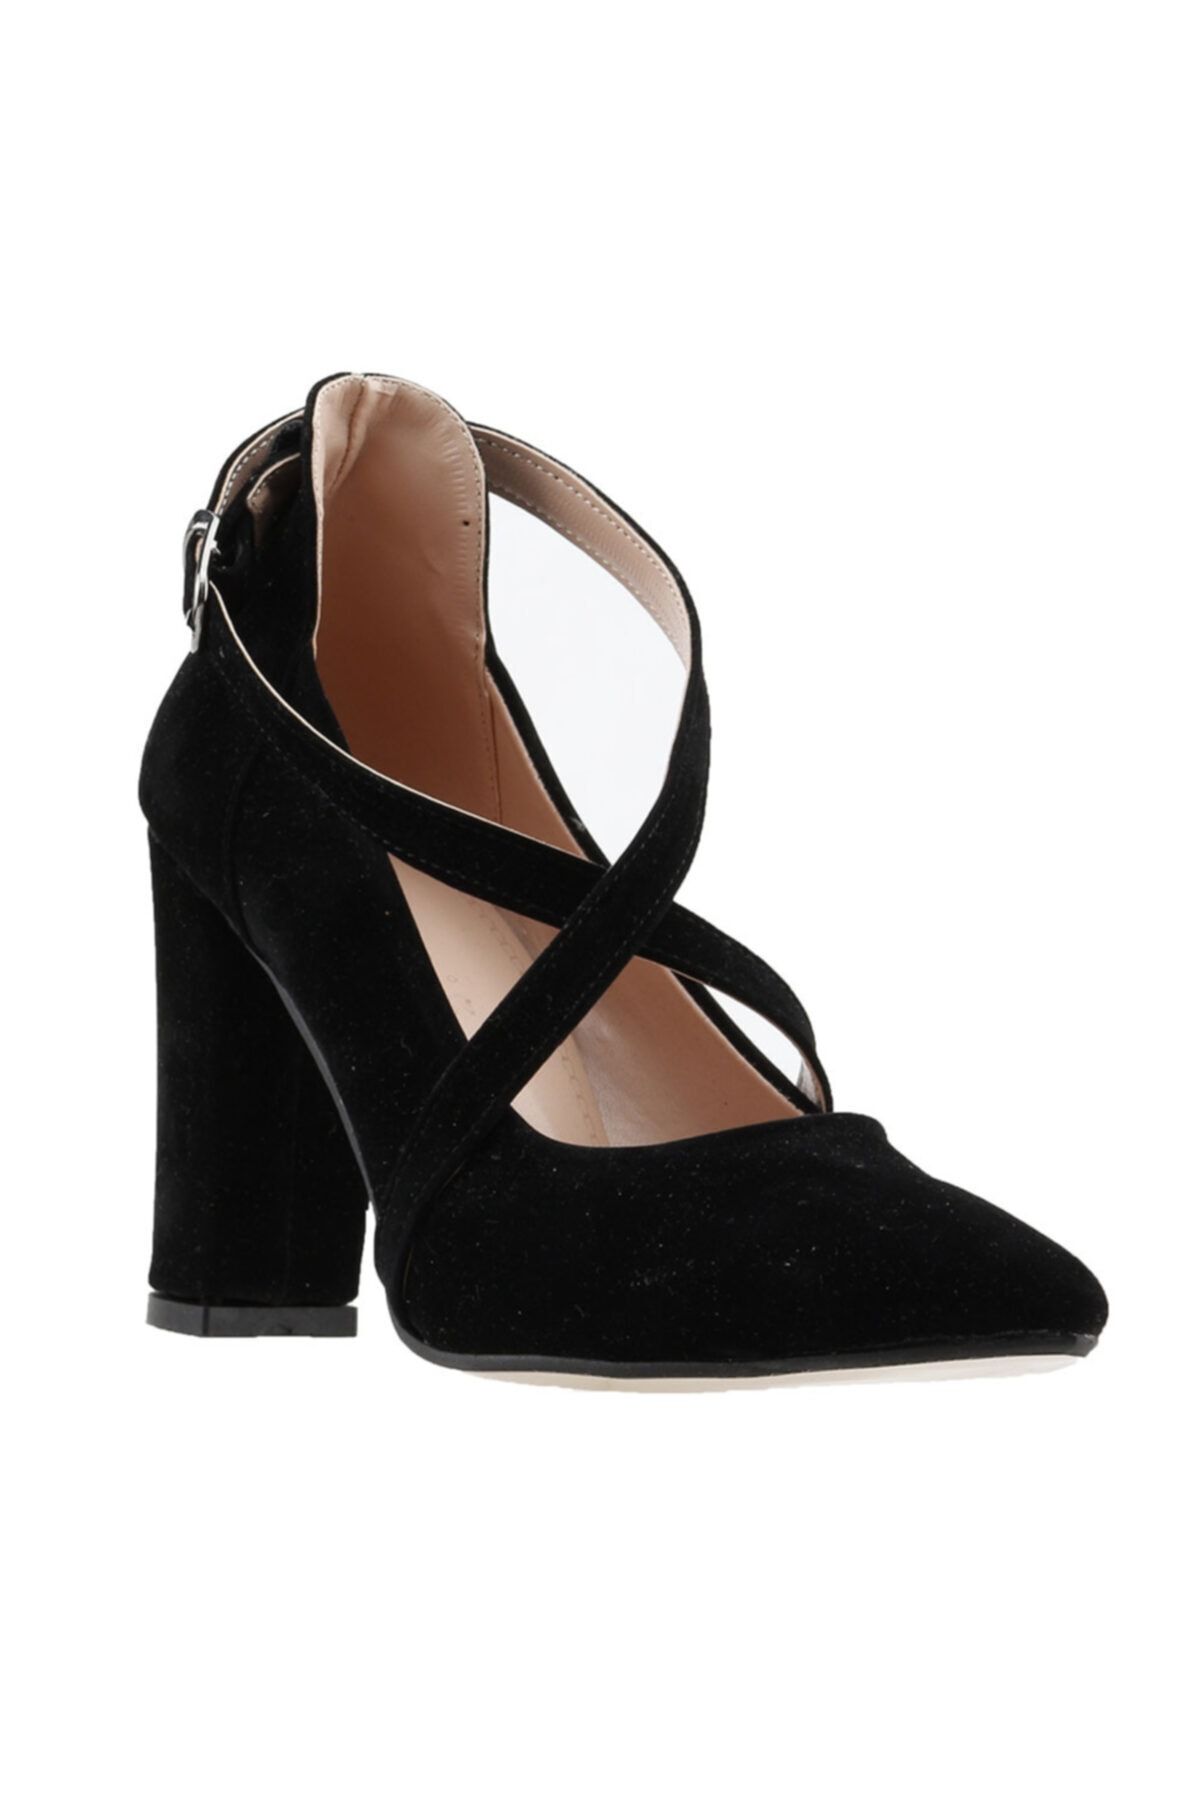 Ayakland Kadın Siyah Süet Klasik Topuklu Ayakkabı 137029-1122